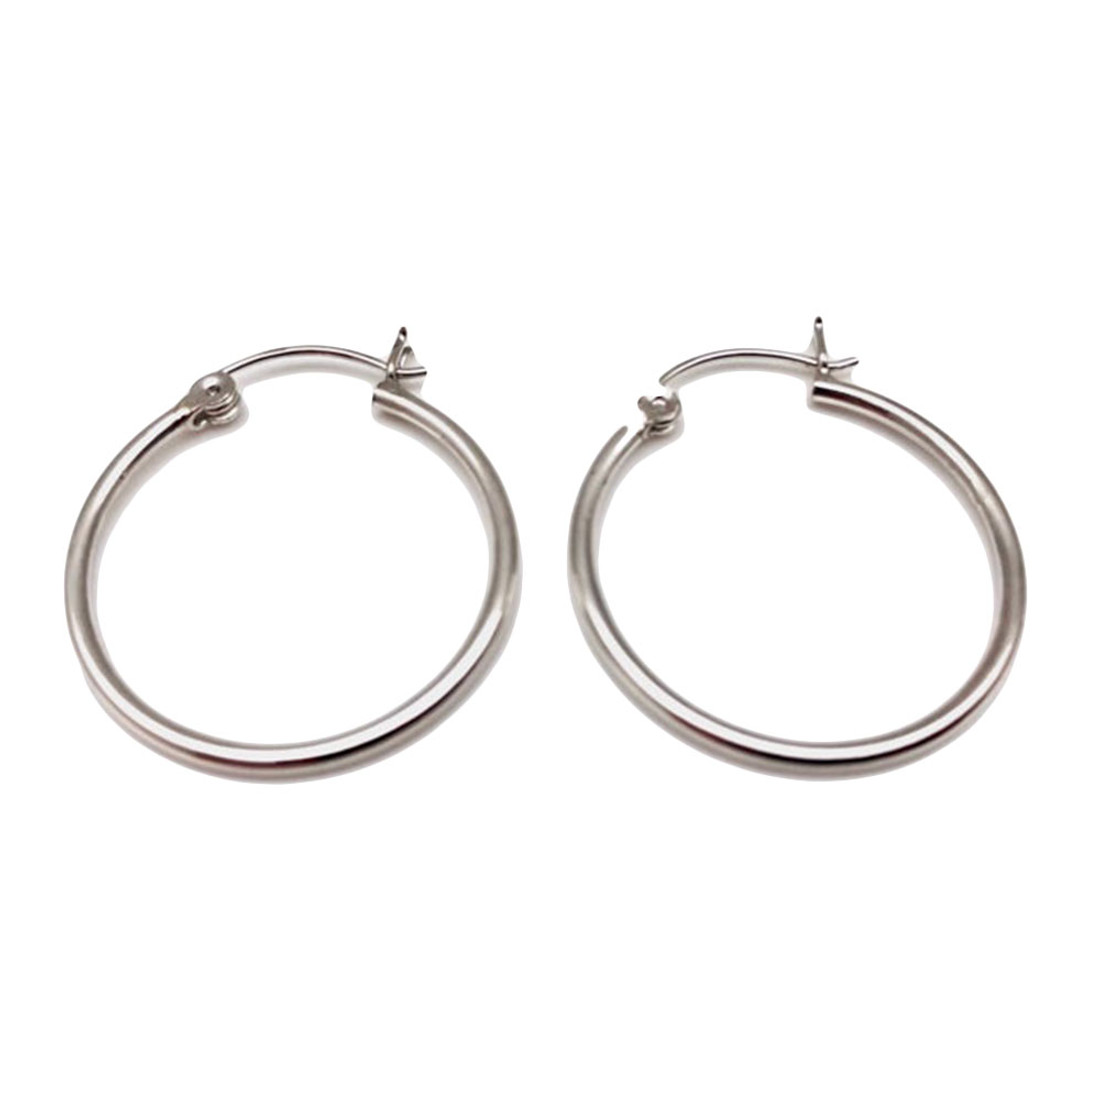 Sterling silver 1.5mm hoop earrings. 